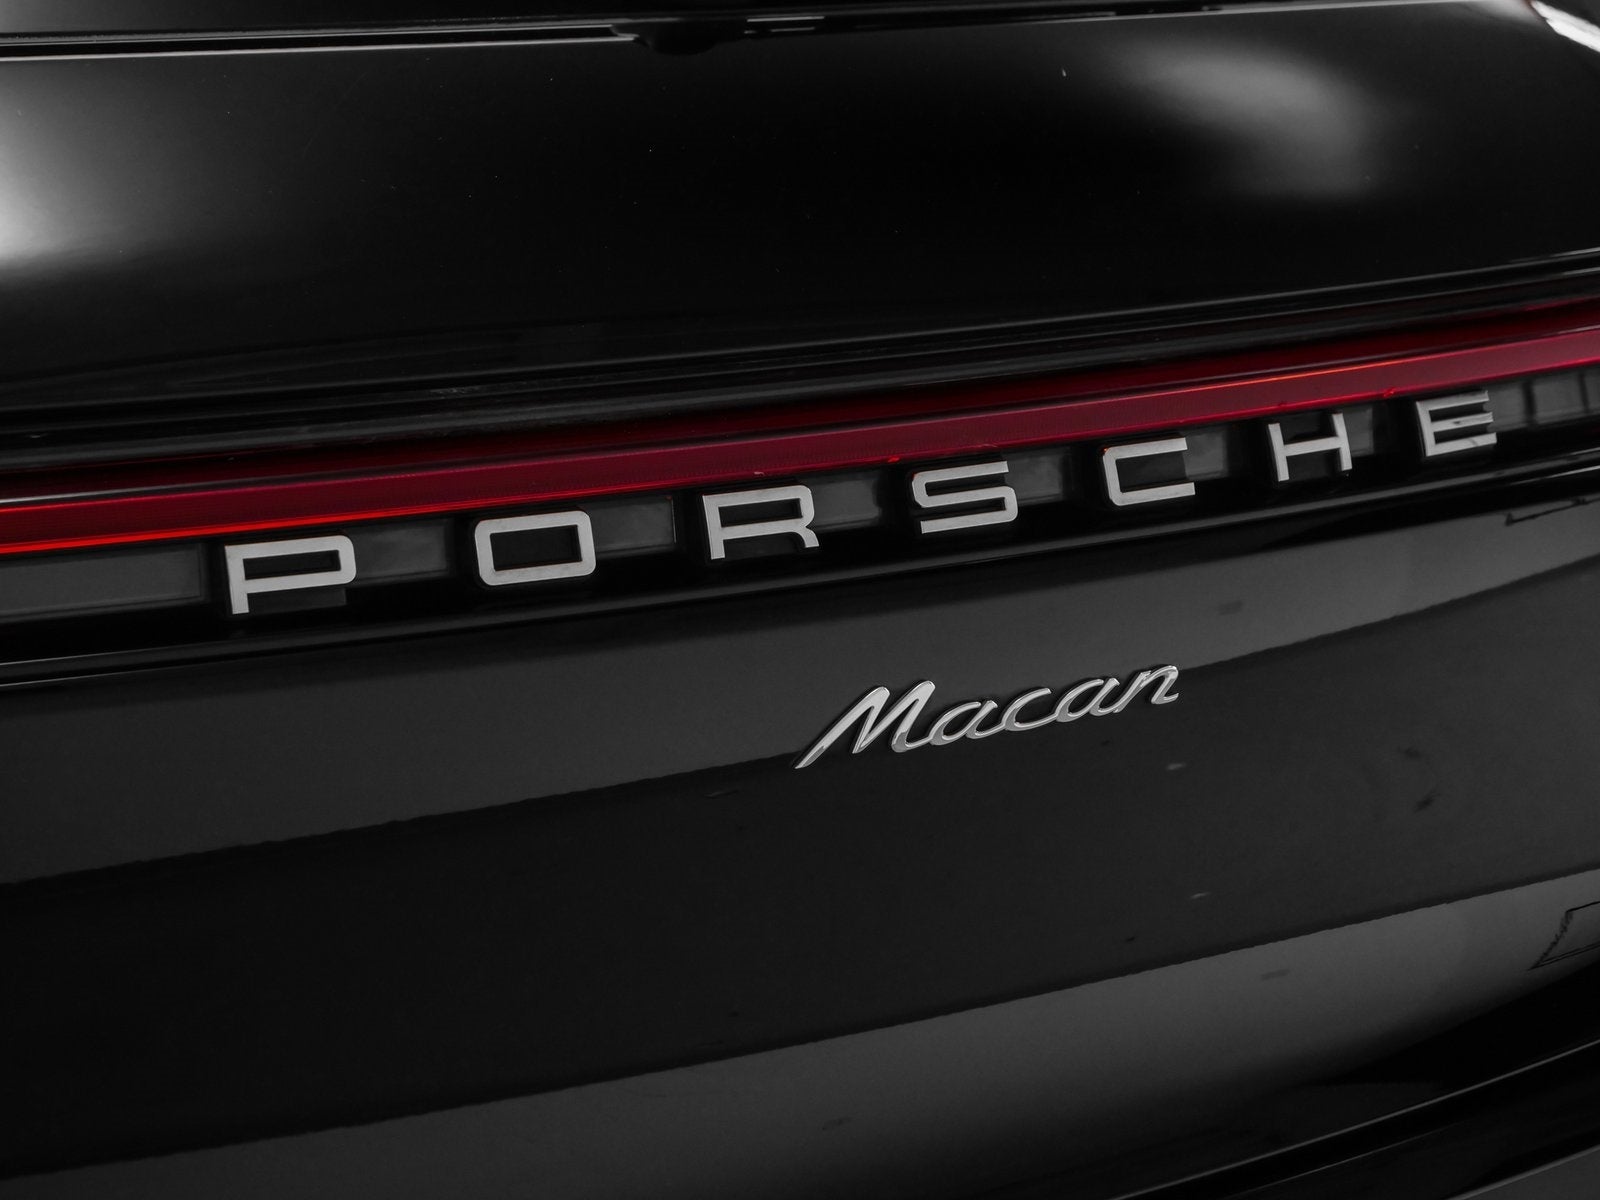 2021 Porsche Macan Base